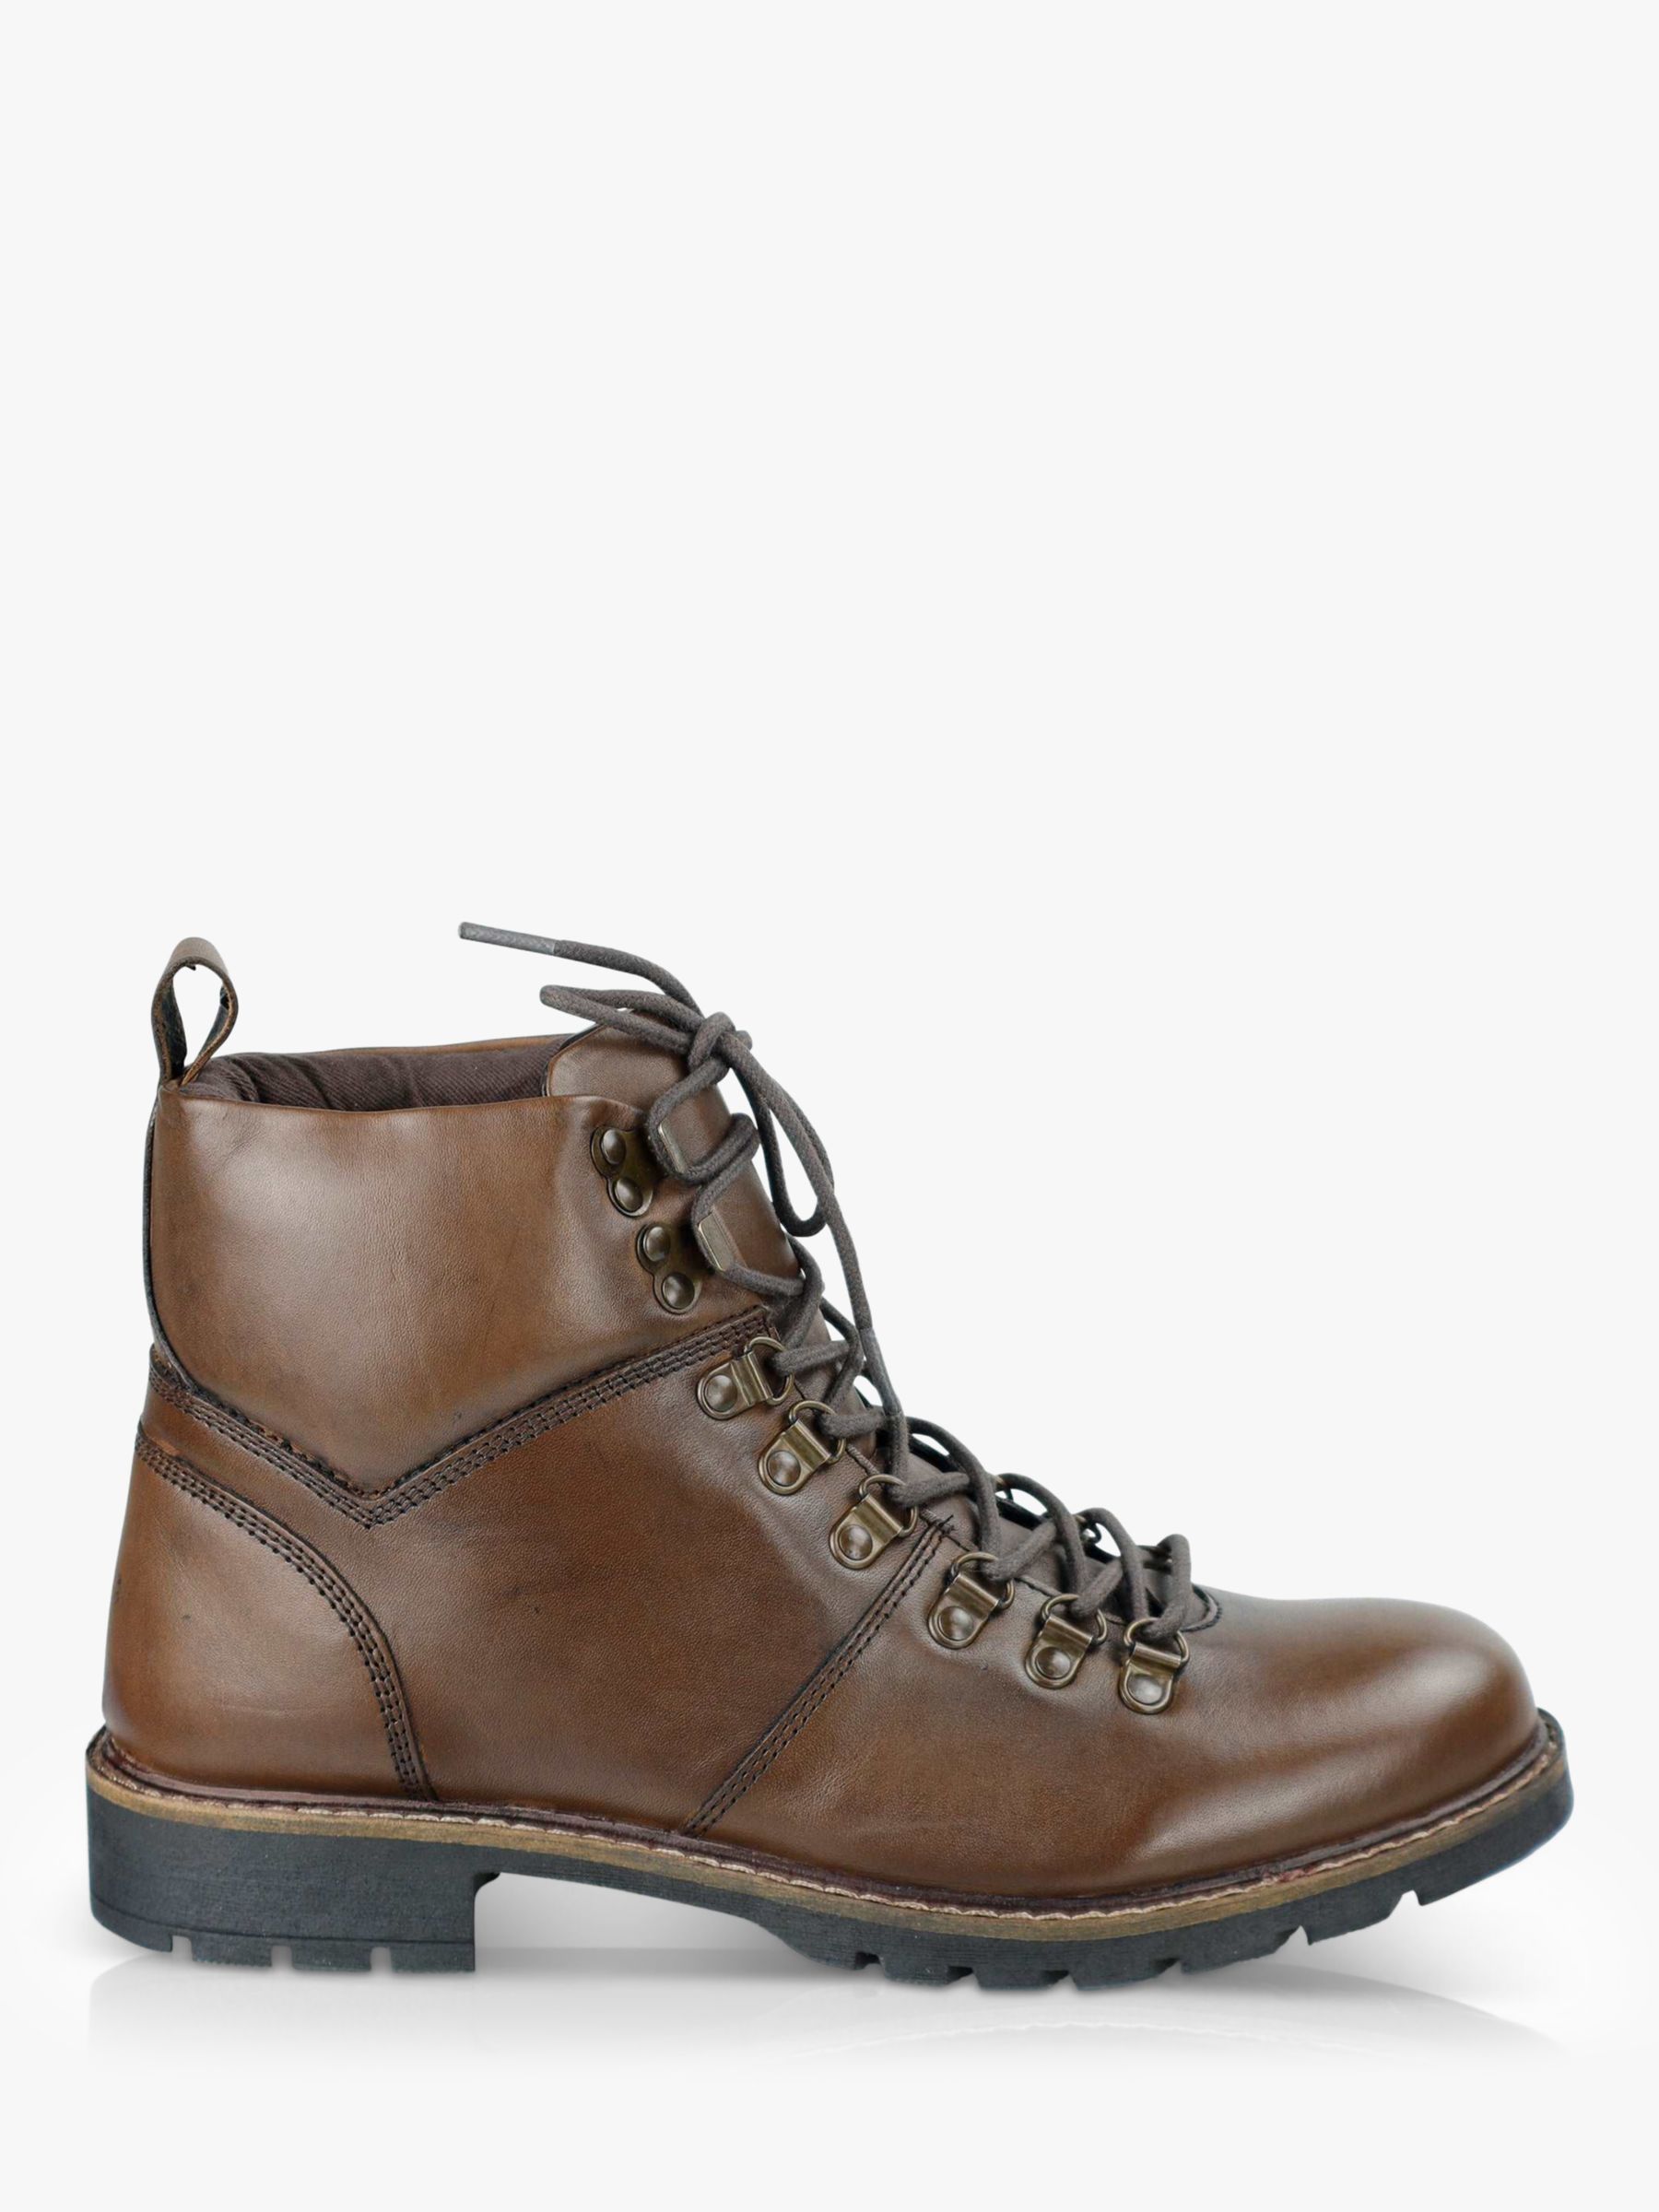 Мраморные кожаные ботинки на шнуровке Silver Street London, коричневый